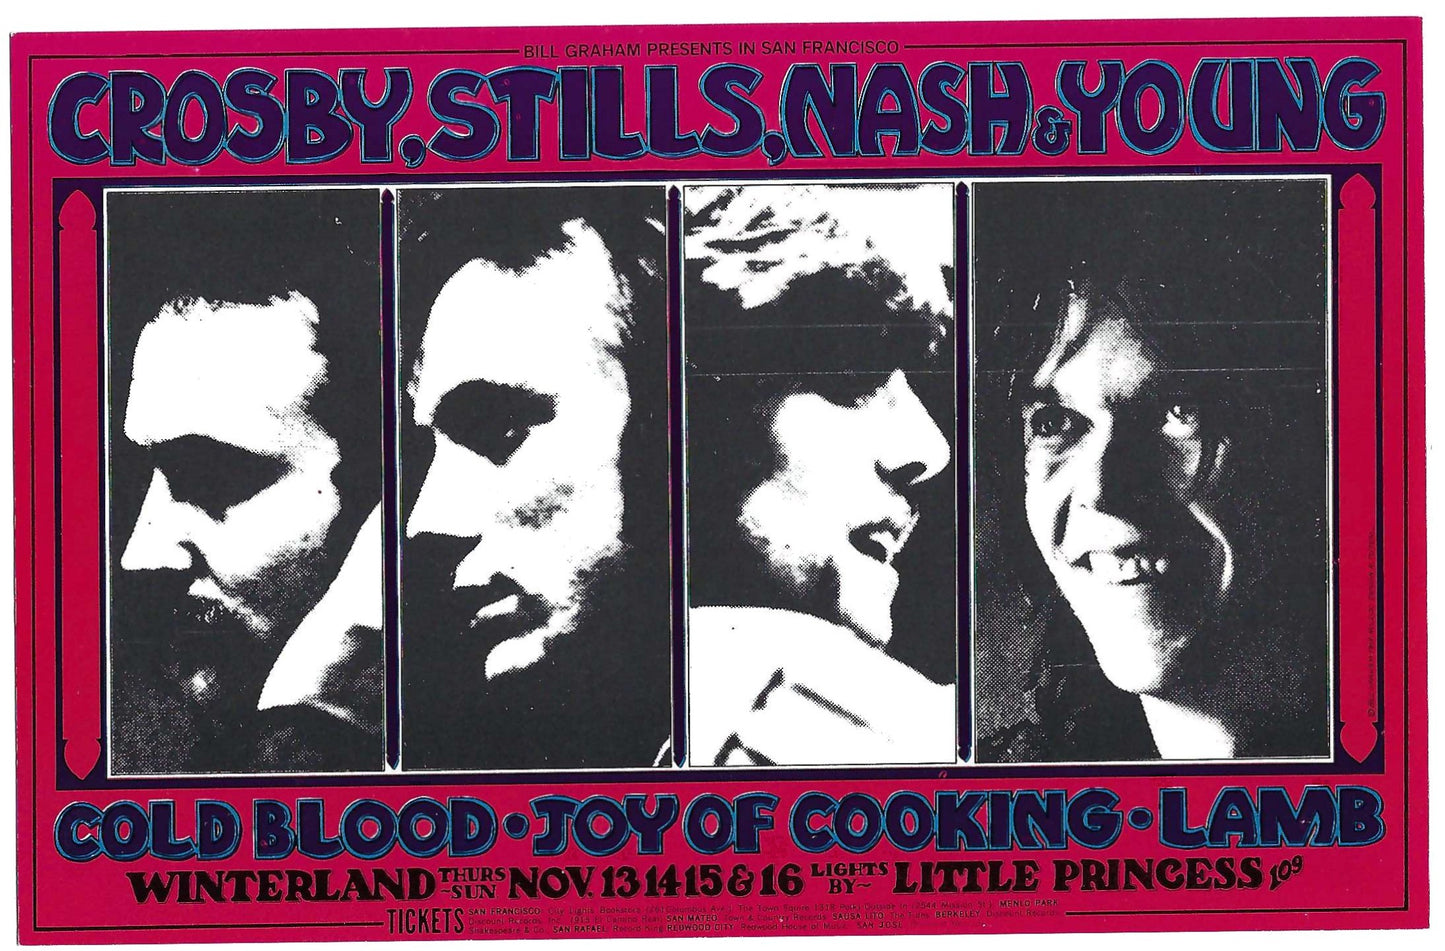 Crosby, Stills, Nash & Young Handbill - Nov 13, 1969